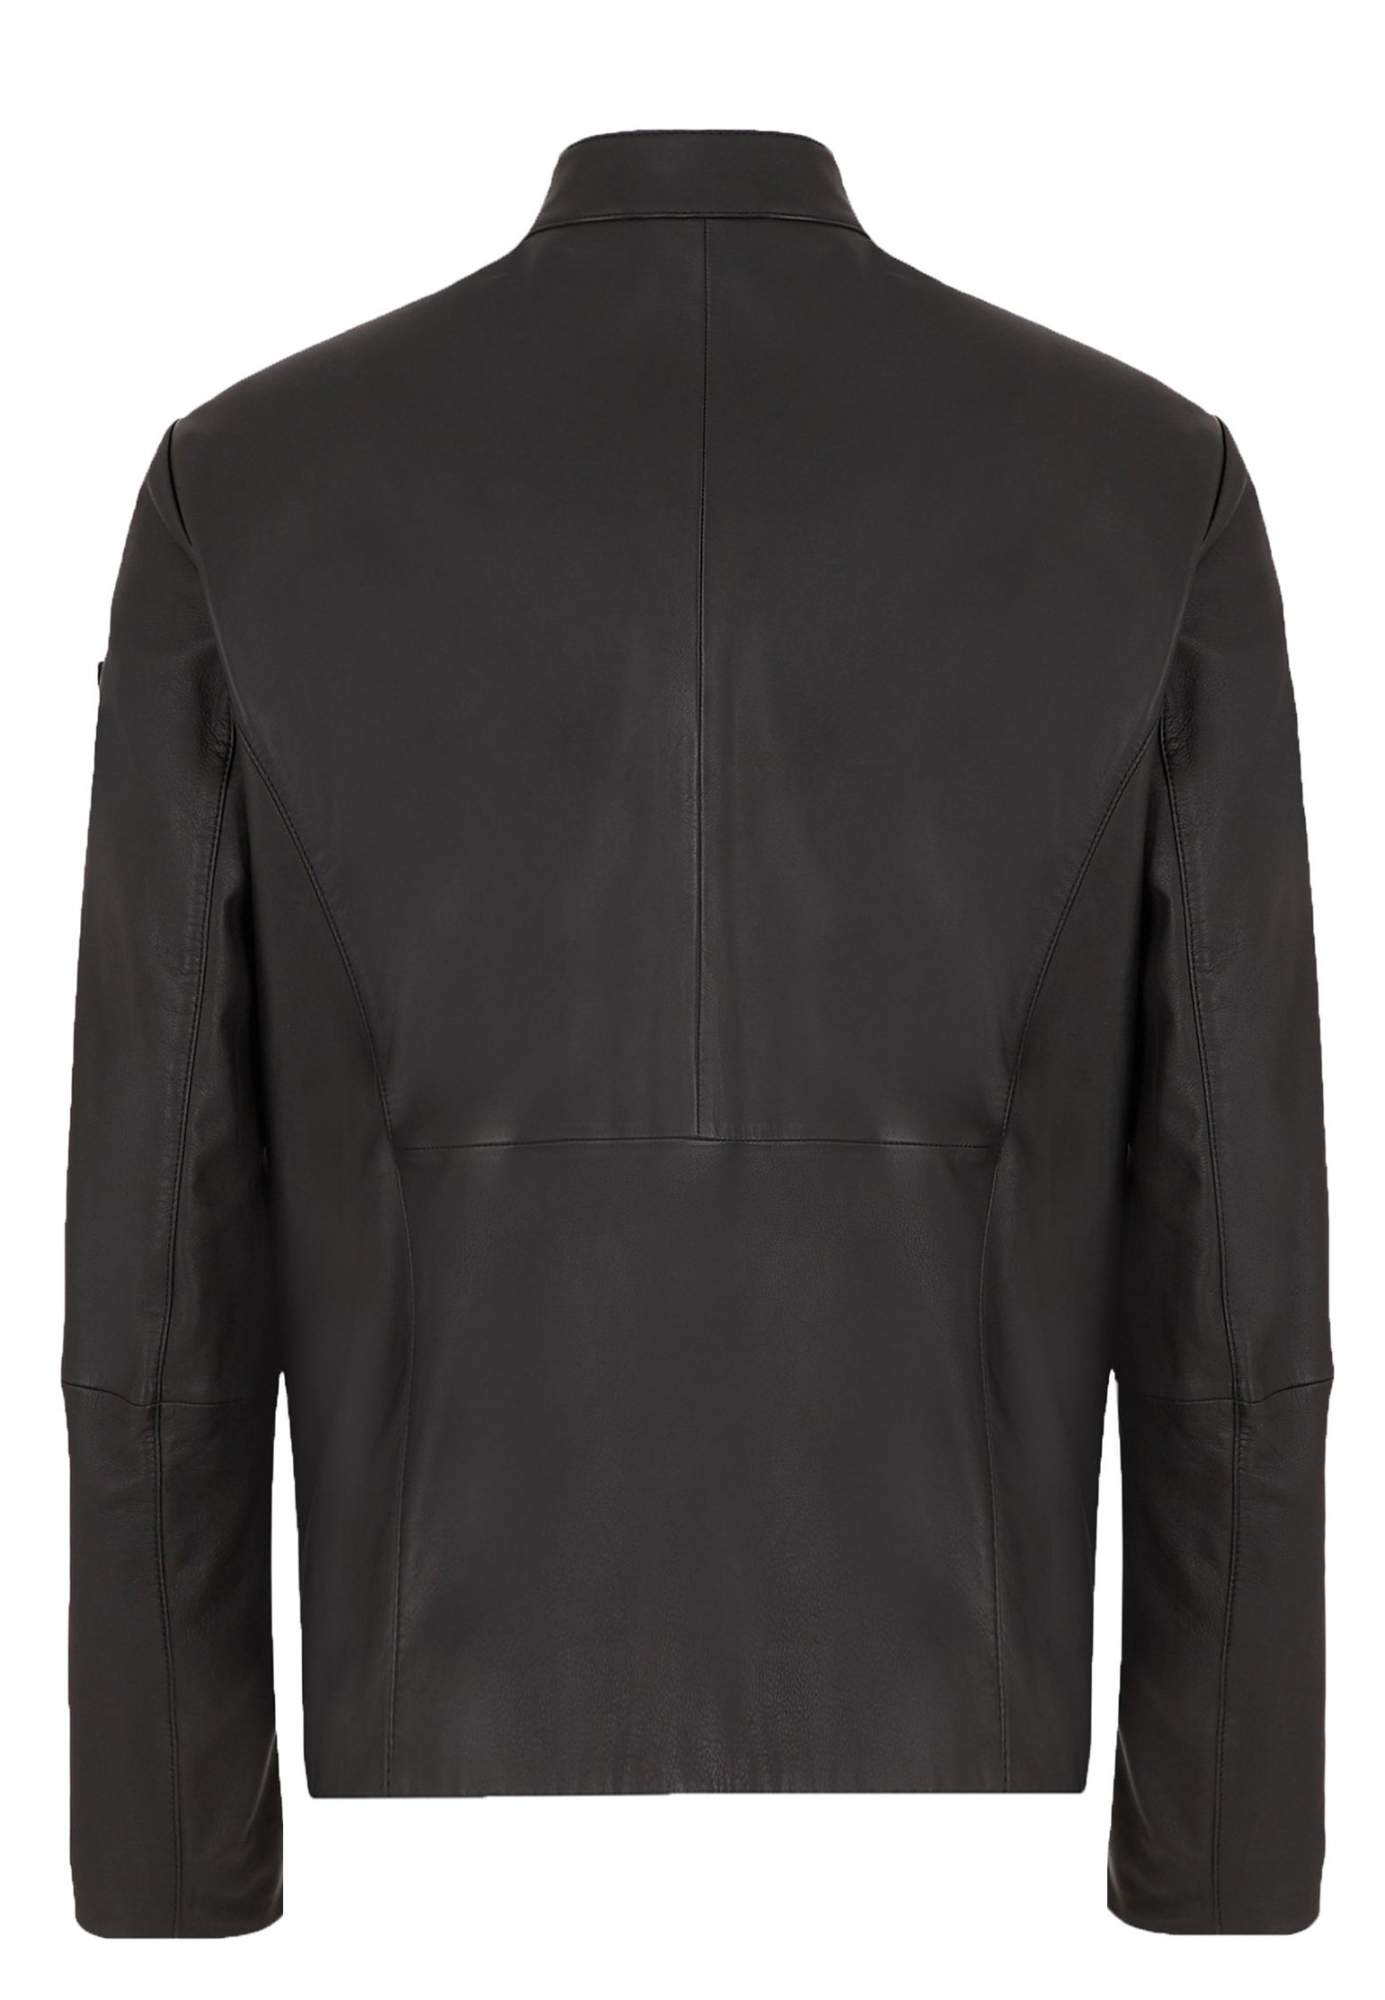 Кожаная куртка мужская Emporio Armani 126871 черная 48 IT